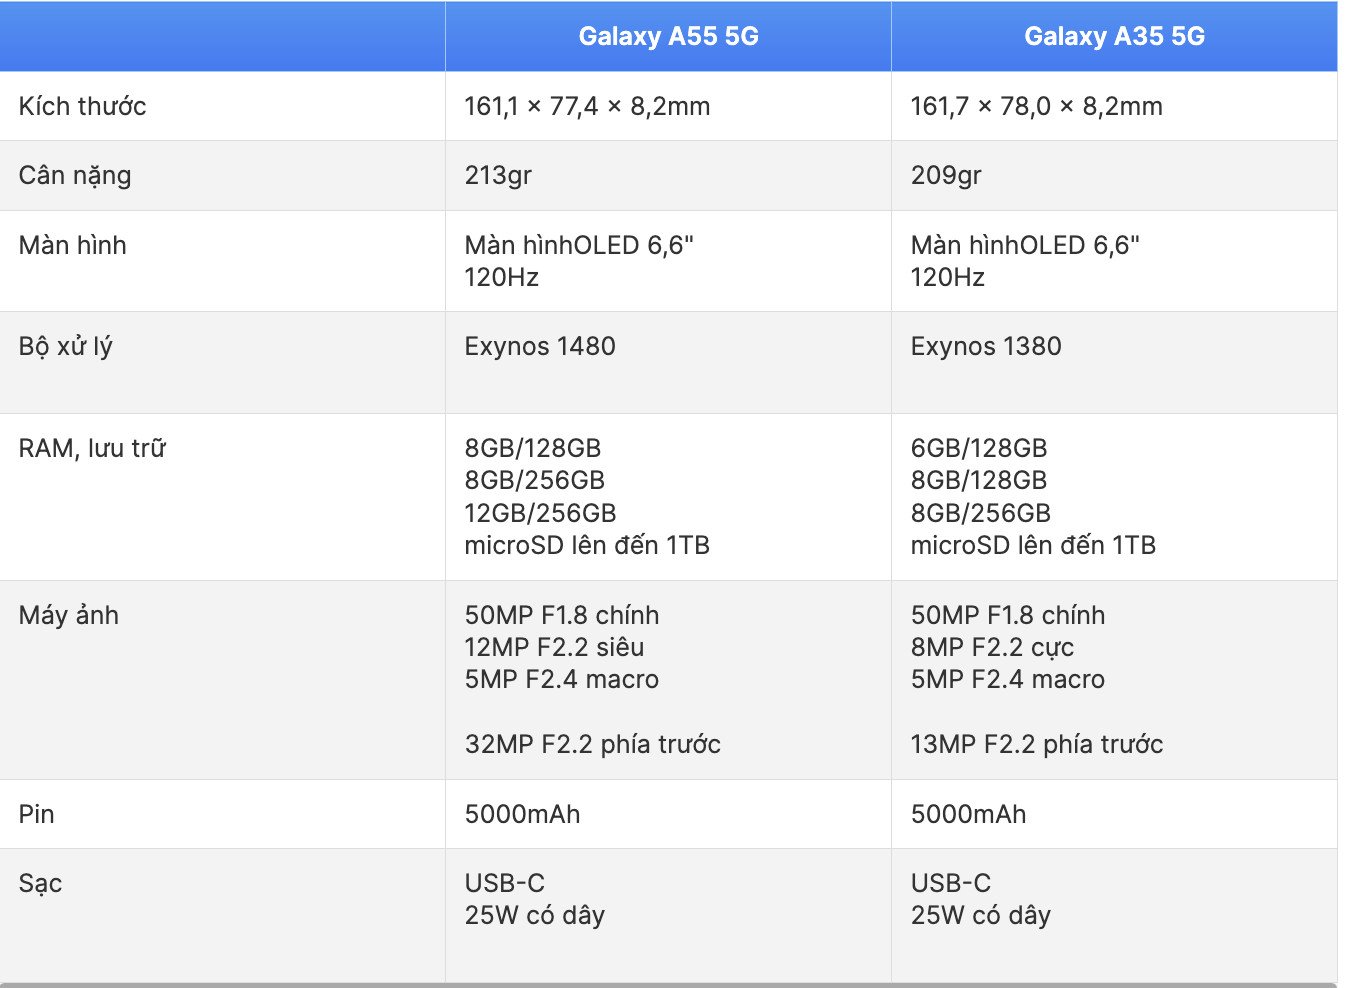 Bảng so sánh thông số Galaxy A55 5G và Galaxy A35 5G